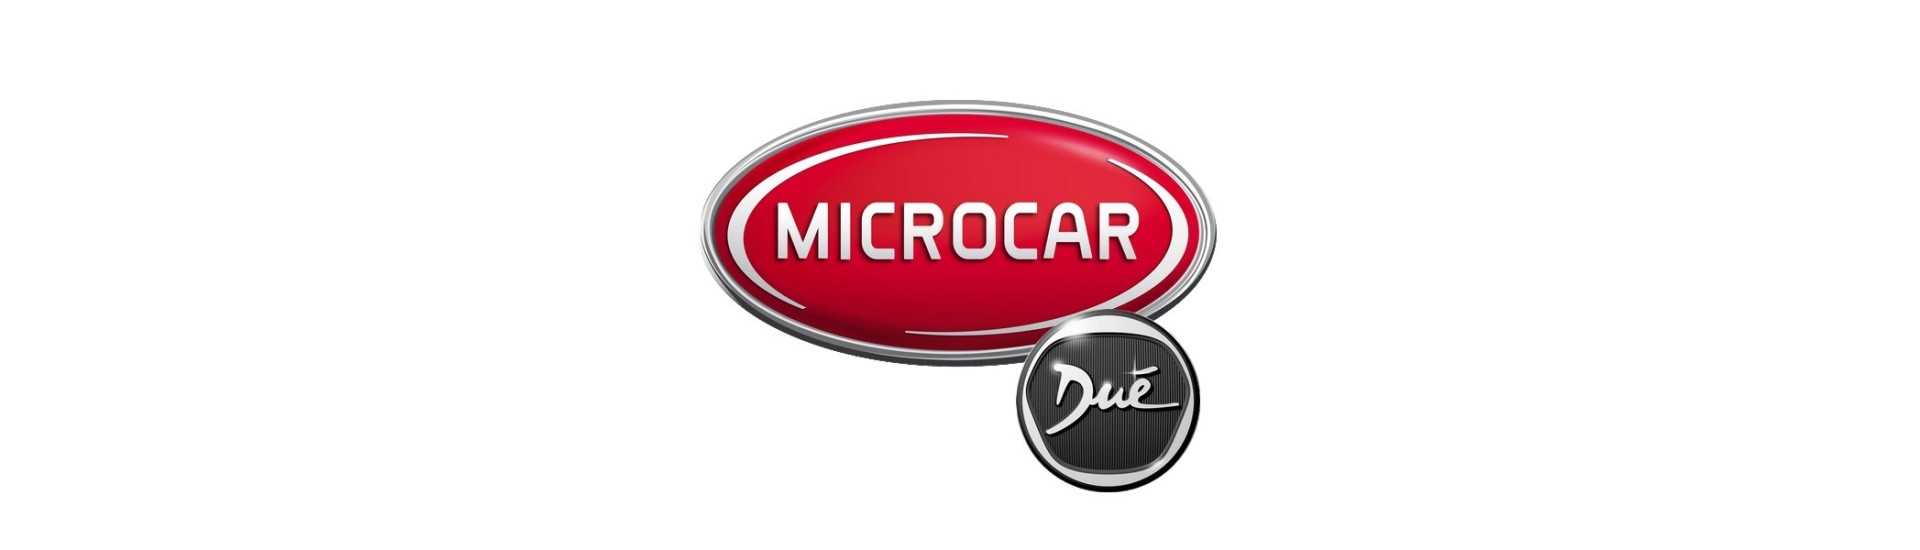 Miglior prezzo auto sospensione rotolo senza permesso Microcar Dué